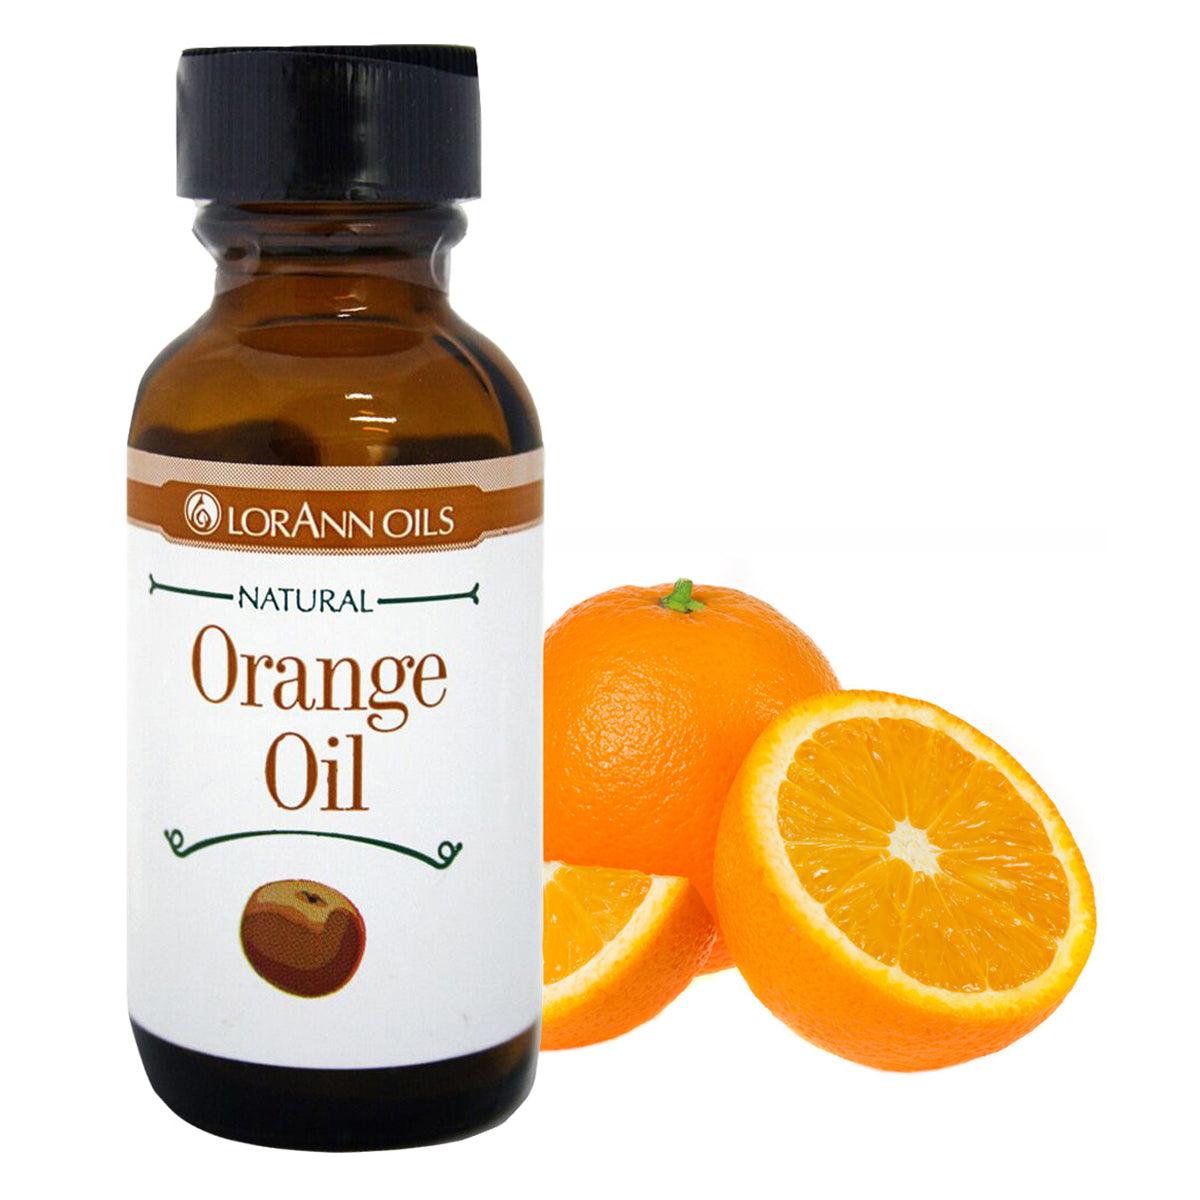 Orange Oil Flavor 1 oz. (29.57 ml) - ViaCheff.com